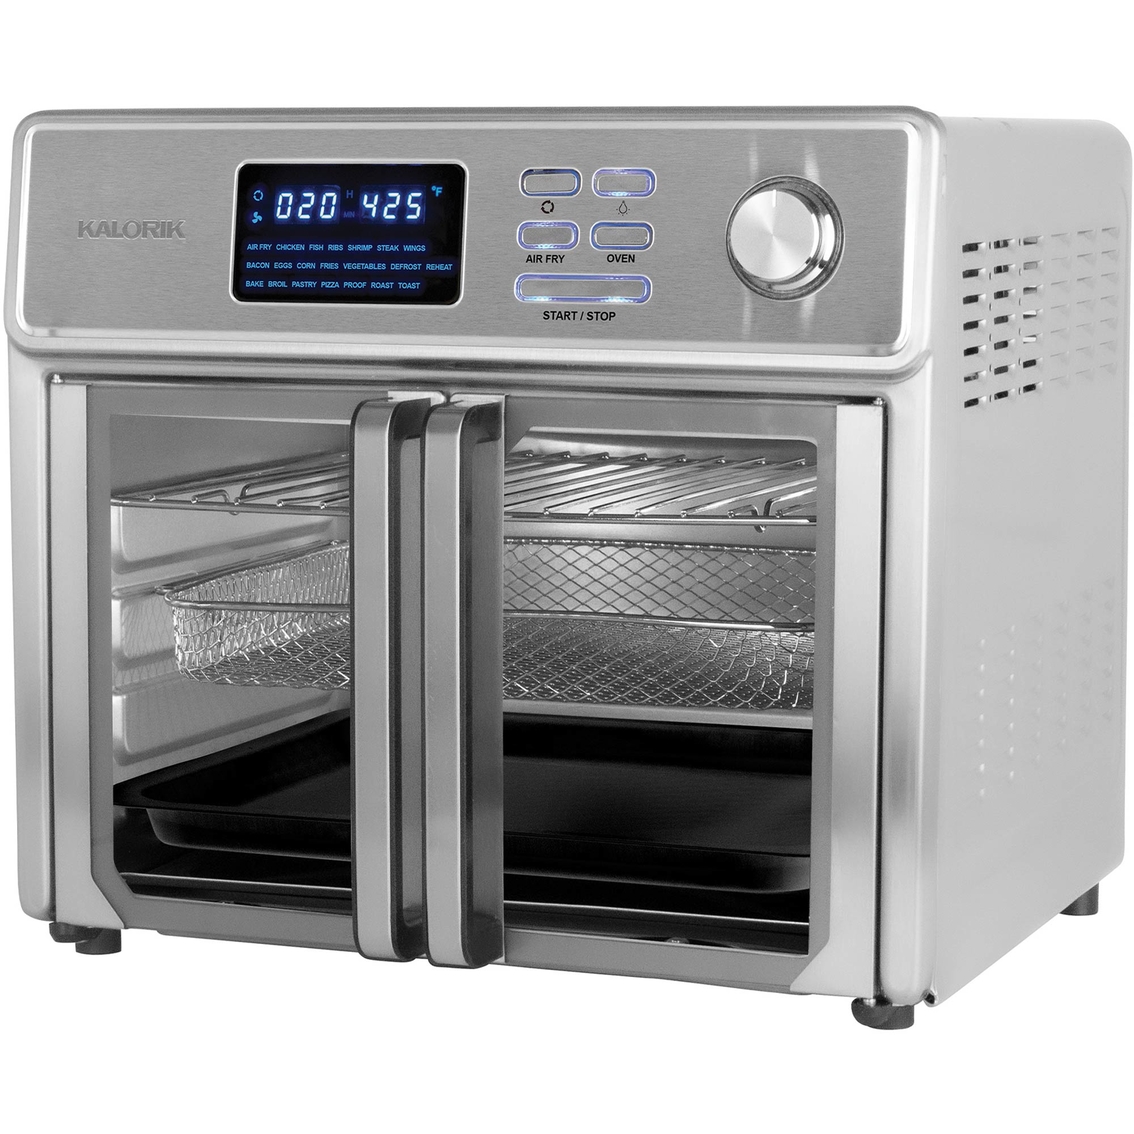 Kalorik 26 qt. Digital Maxx Air Fryer Oven - Image 2 of 7